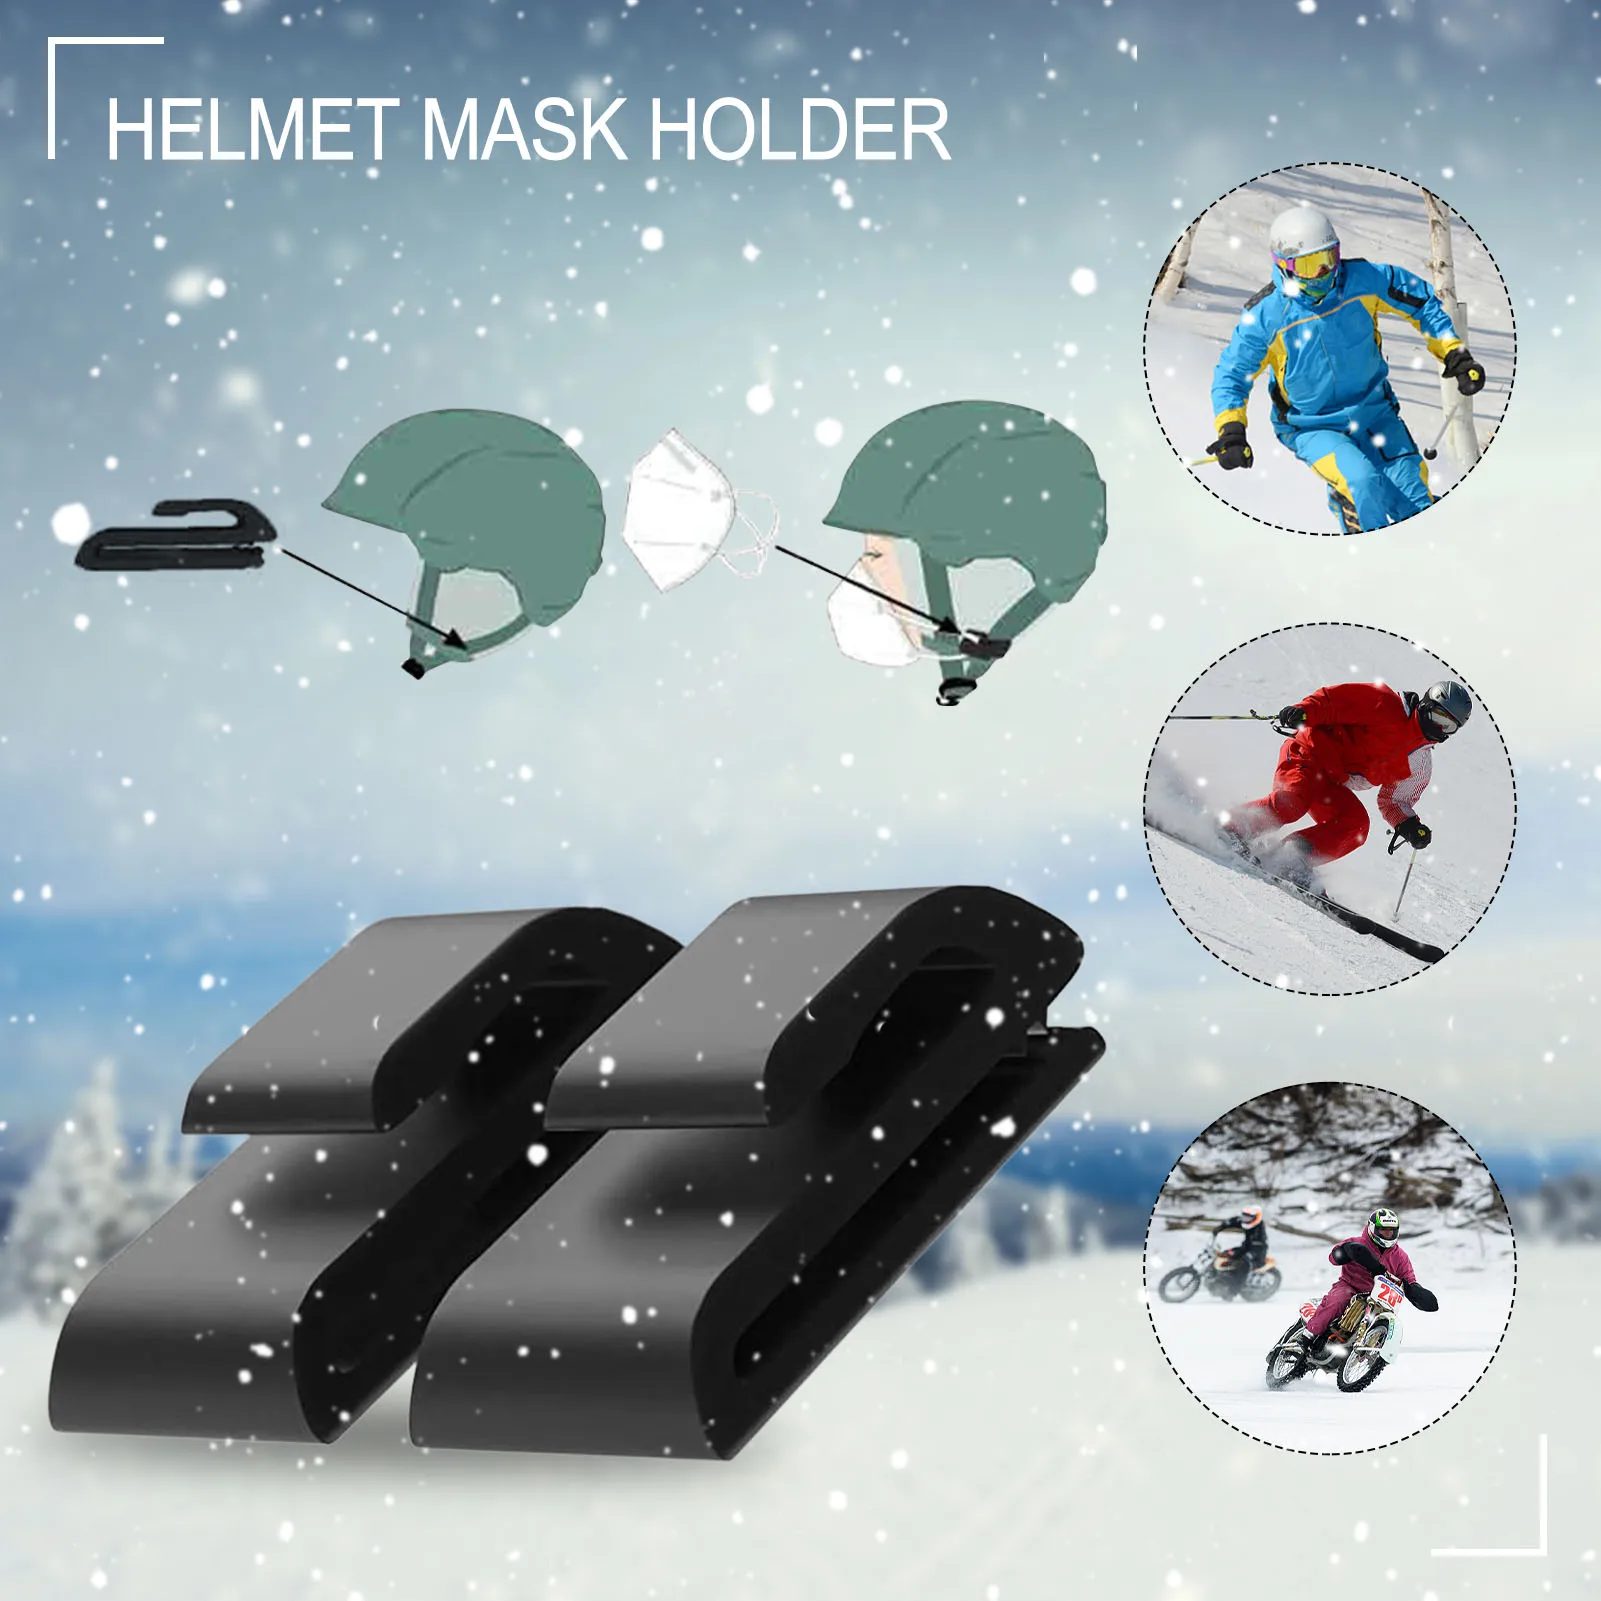 

2PCS Mask Holder Ski Helmet Clip Easy Mounting On Helmet Strap Ski Helmet Mask Holder Outdoor Snowboard Ski Helmet Mask Clip